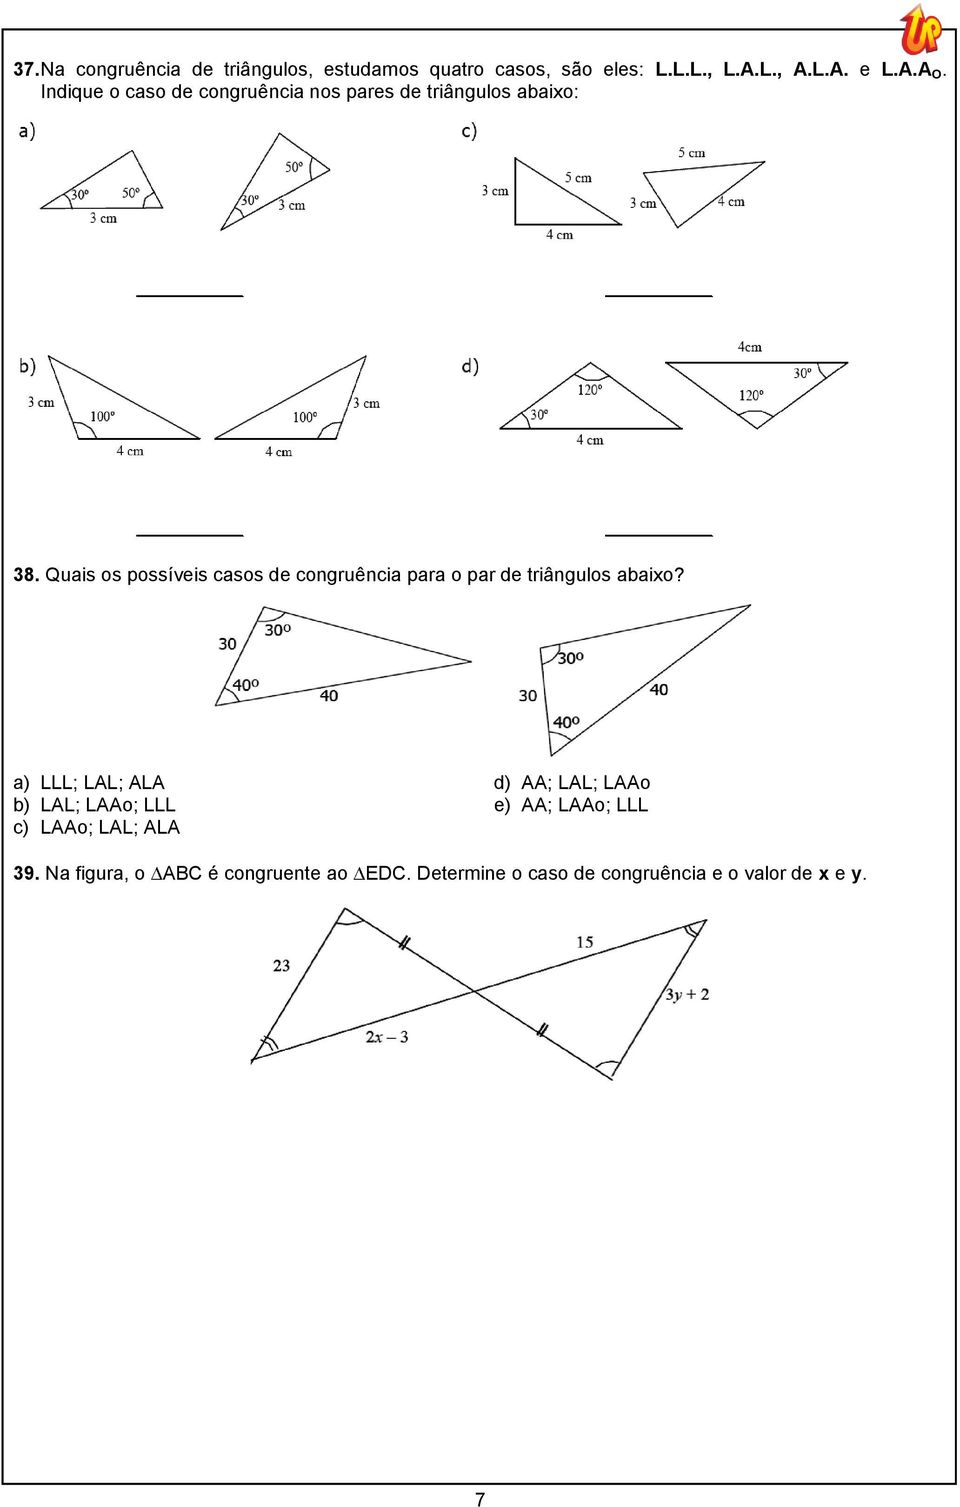 Quais os possíveis casos de congruência para o par de triângulos abaixo?